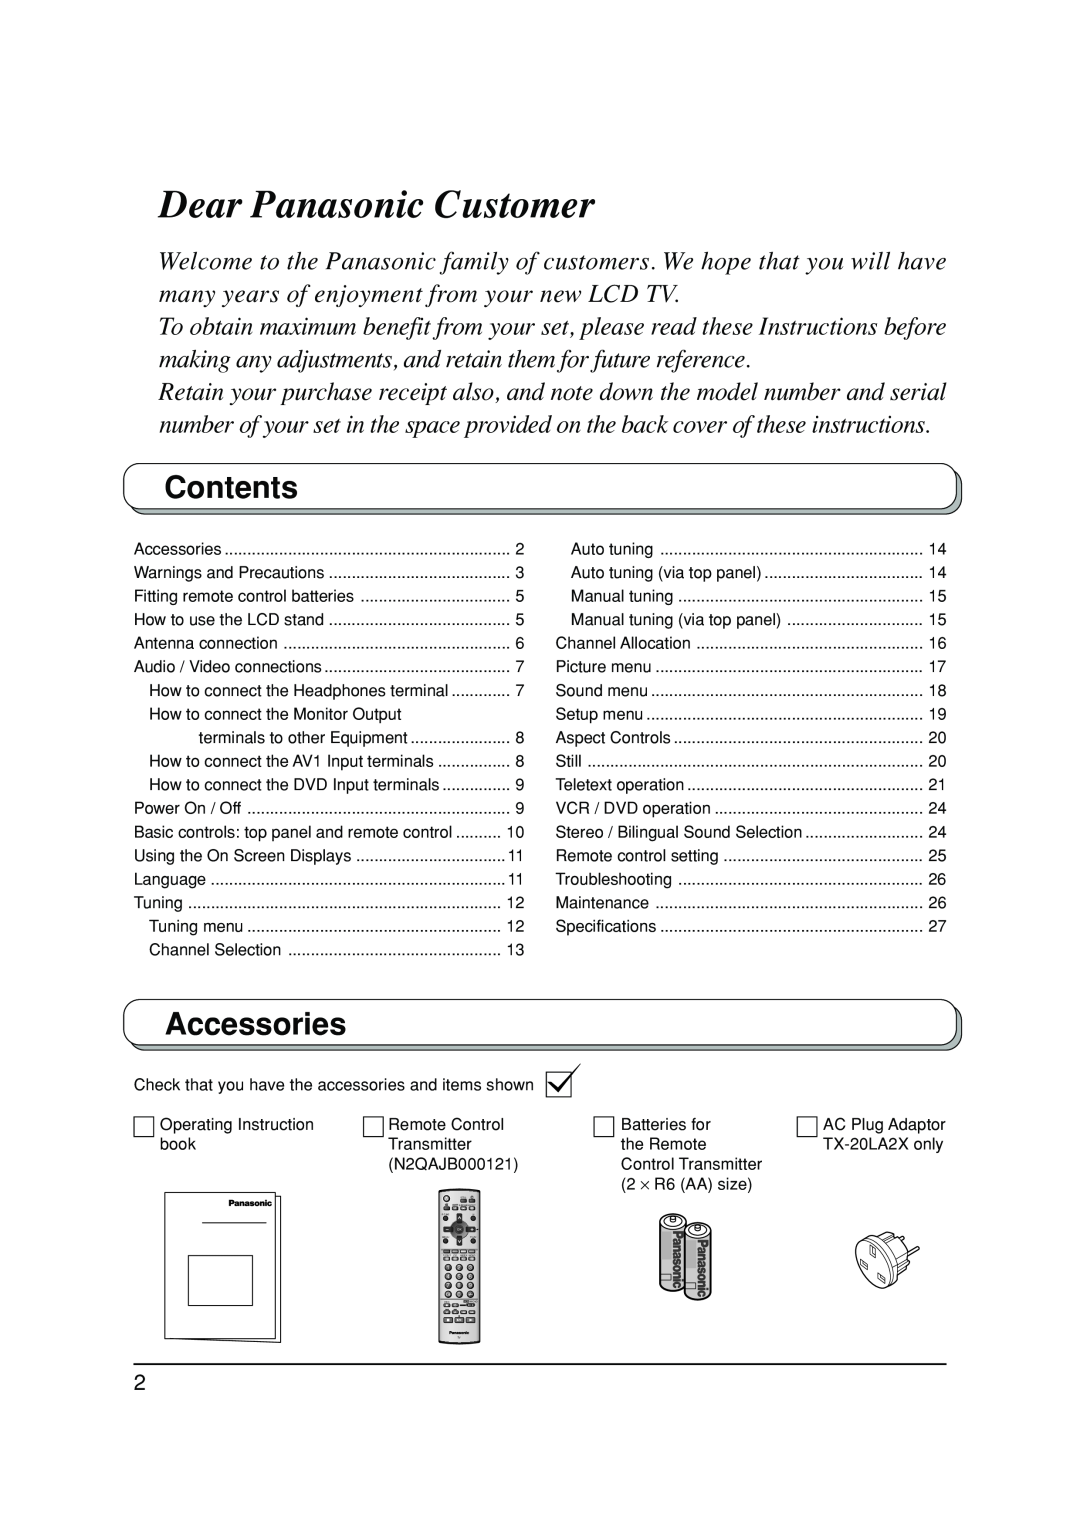 Panasonic TX-20LA2M, TX-20LA2A, TX-20LA2X manual Contents, Accessories, Dear Panasonic Customer 